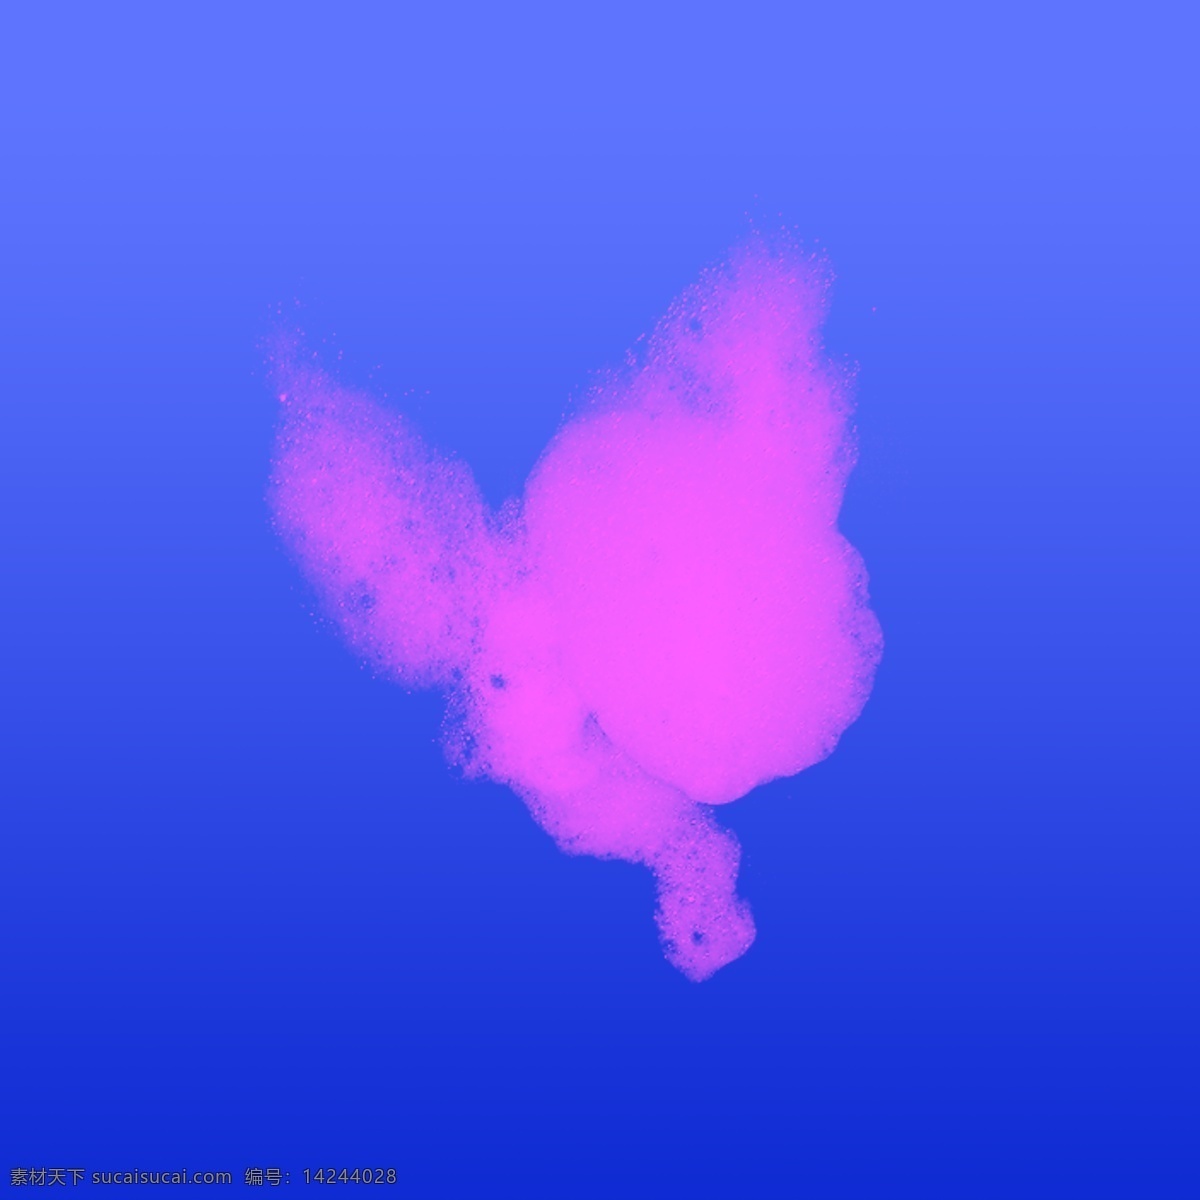 艺术烟雾背景 艺术 烟雾 气体 背景 蝴蝶 水 蒸汽 水蒸气 分层